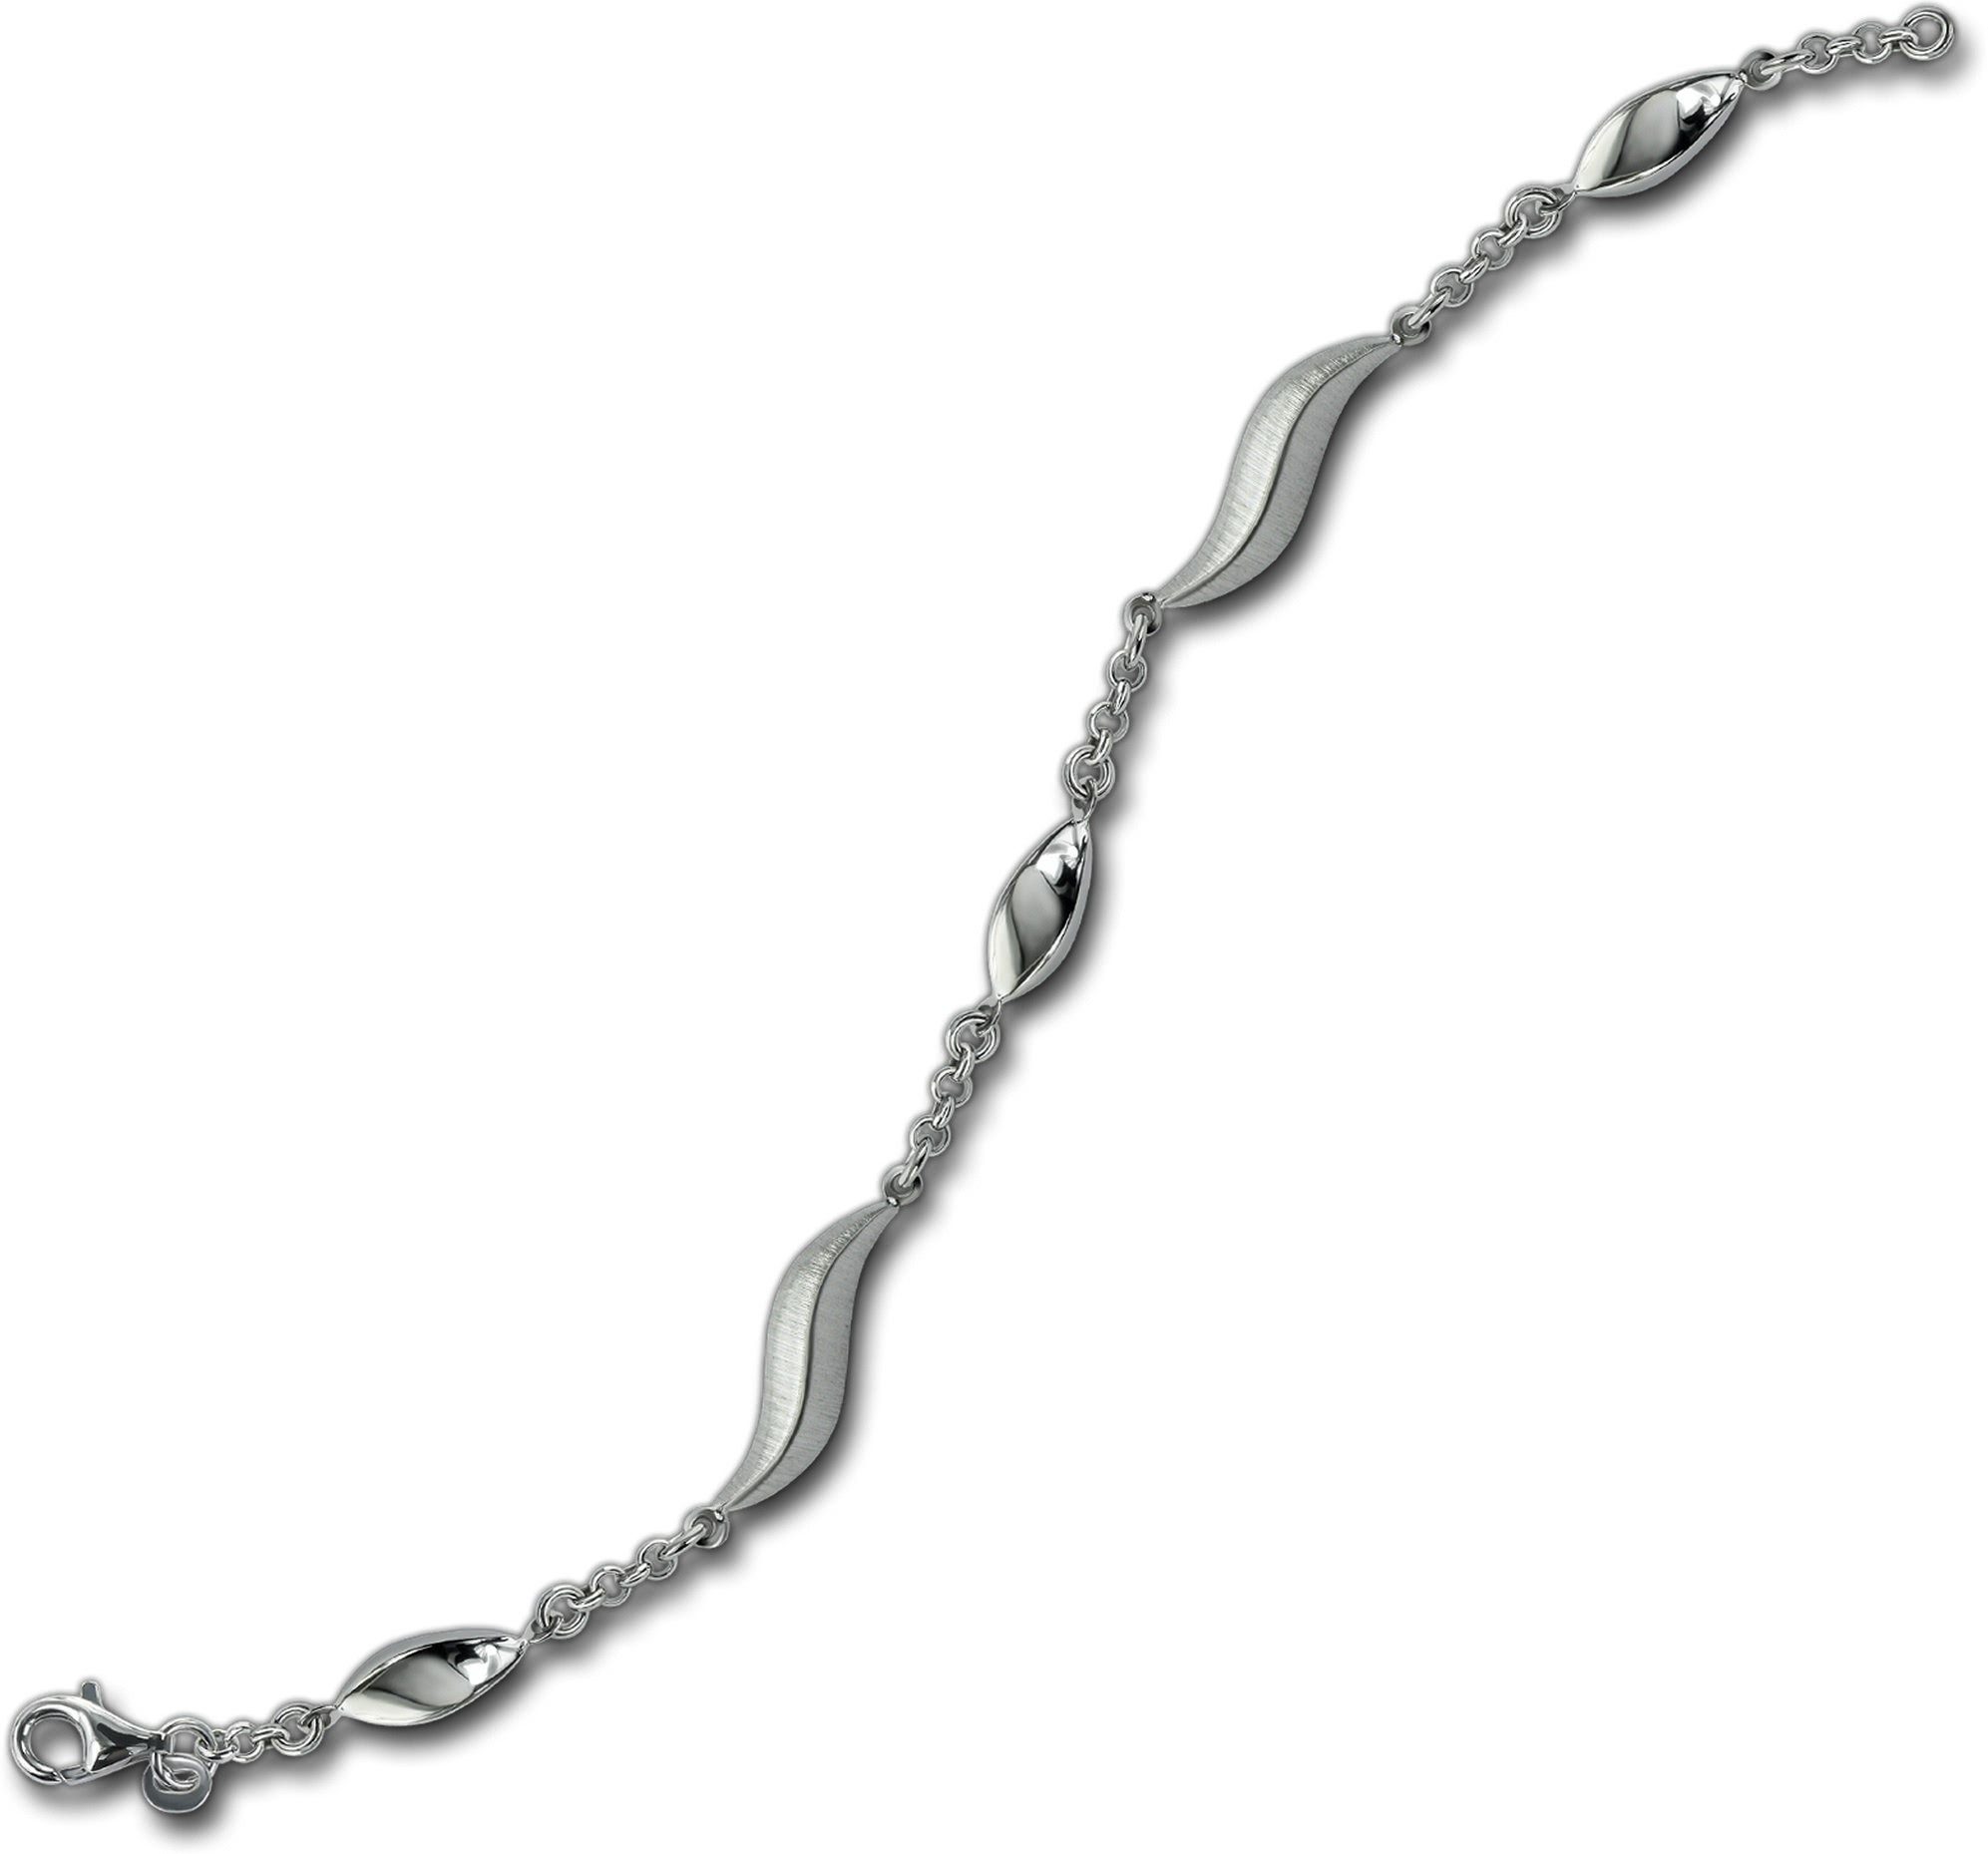 Balia Silberarmband Silber Balia mattiert Damen 925 Armband (Wave) für 19,5cm, Armband Silber (Armband), ca